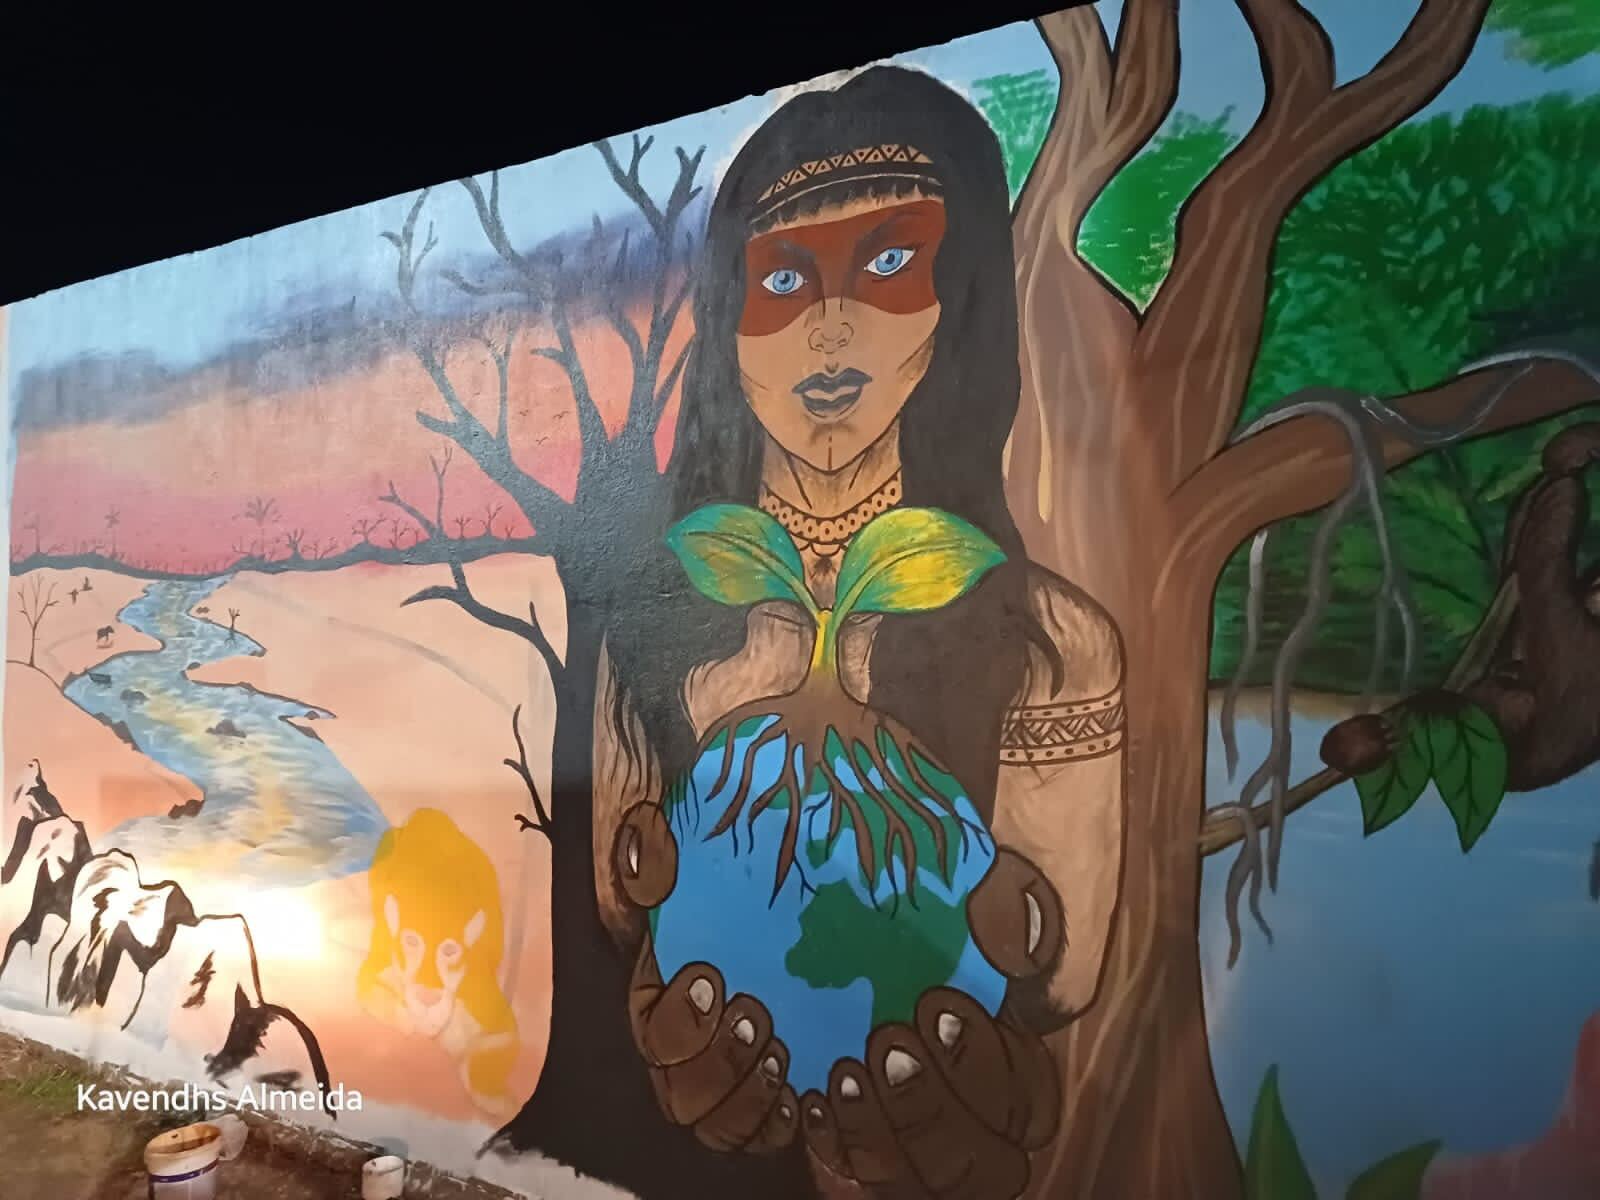 Brasil: las comunidades locales pintaron murales y plantaron árboles en Silves, como parte de los preparativos de sus acciones de Renovemos Ya — #TransiciónEnergéticaJusta. Luchan contra el gas fósil en el Amazonas. Créditos: Kavendhs Almeida